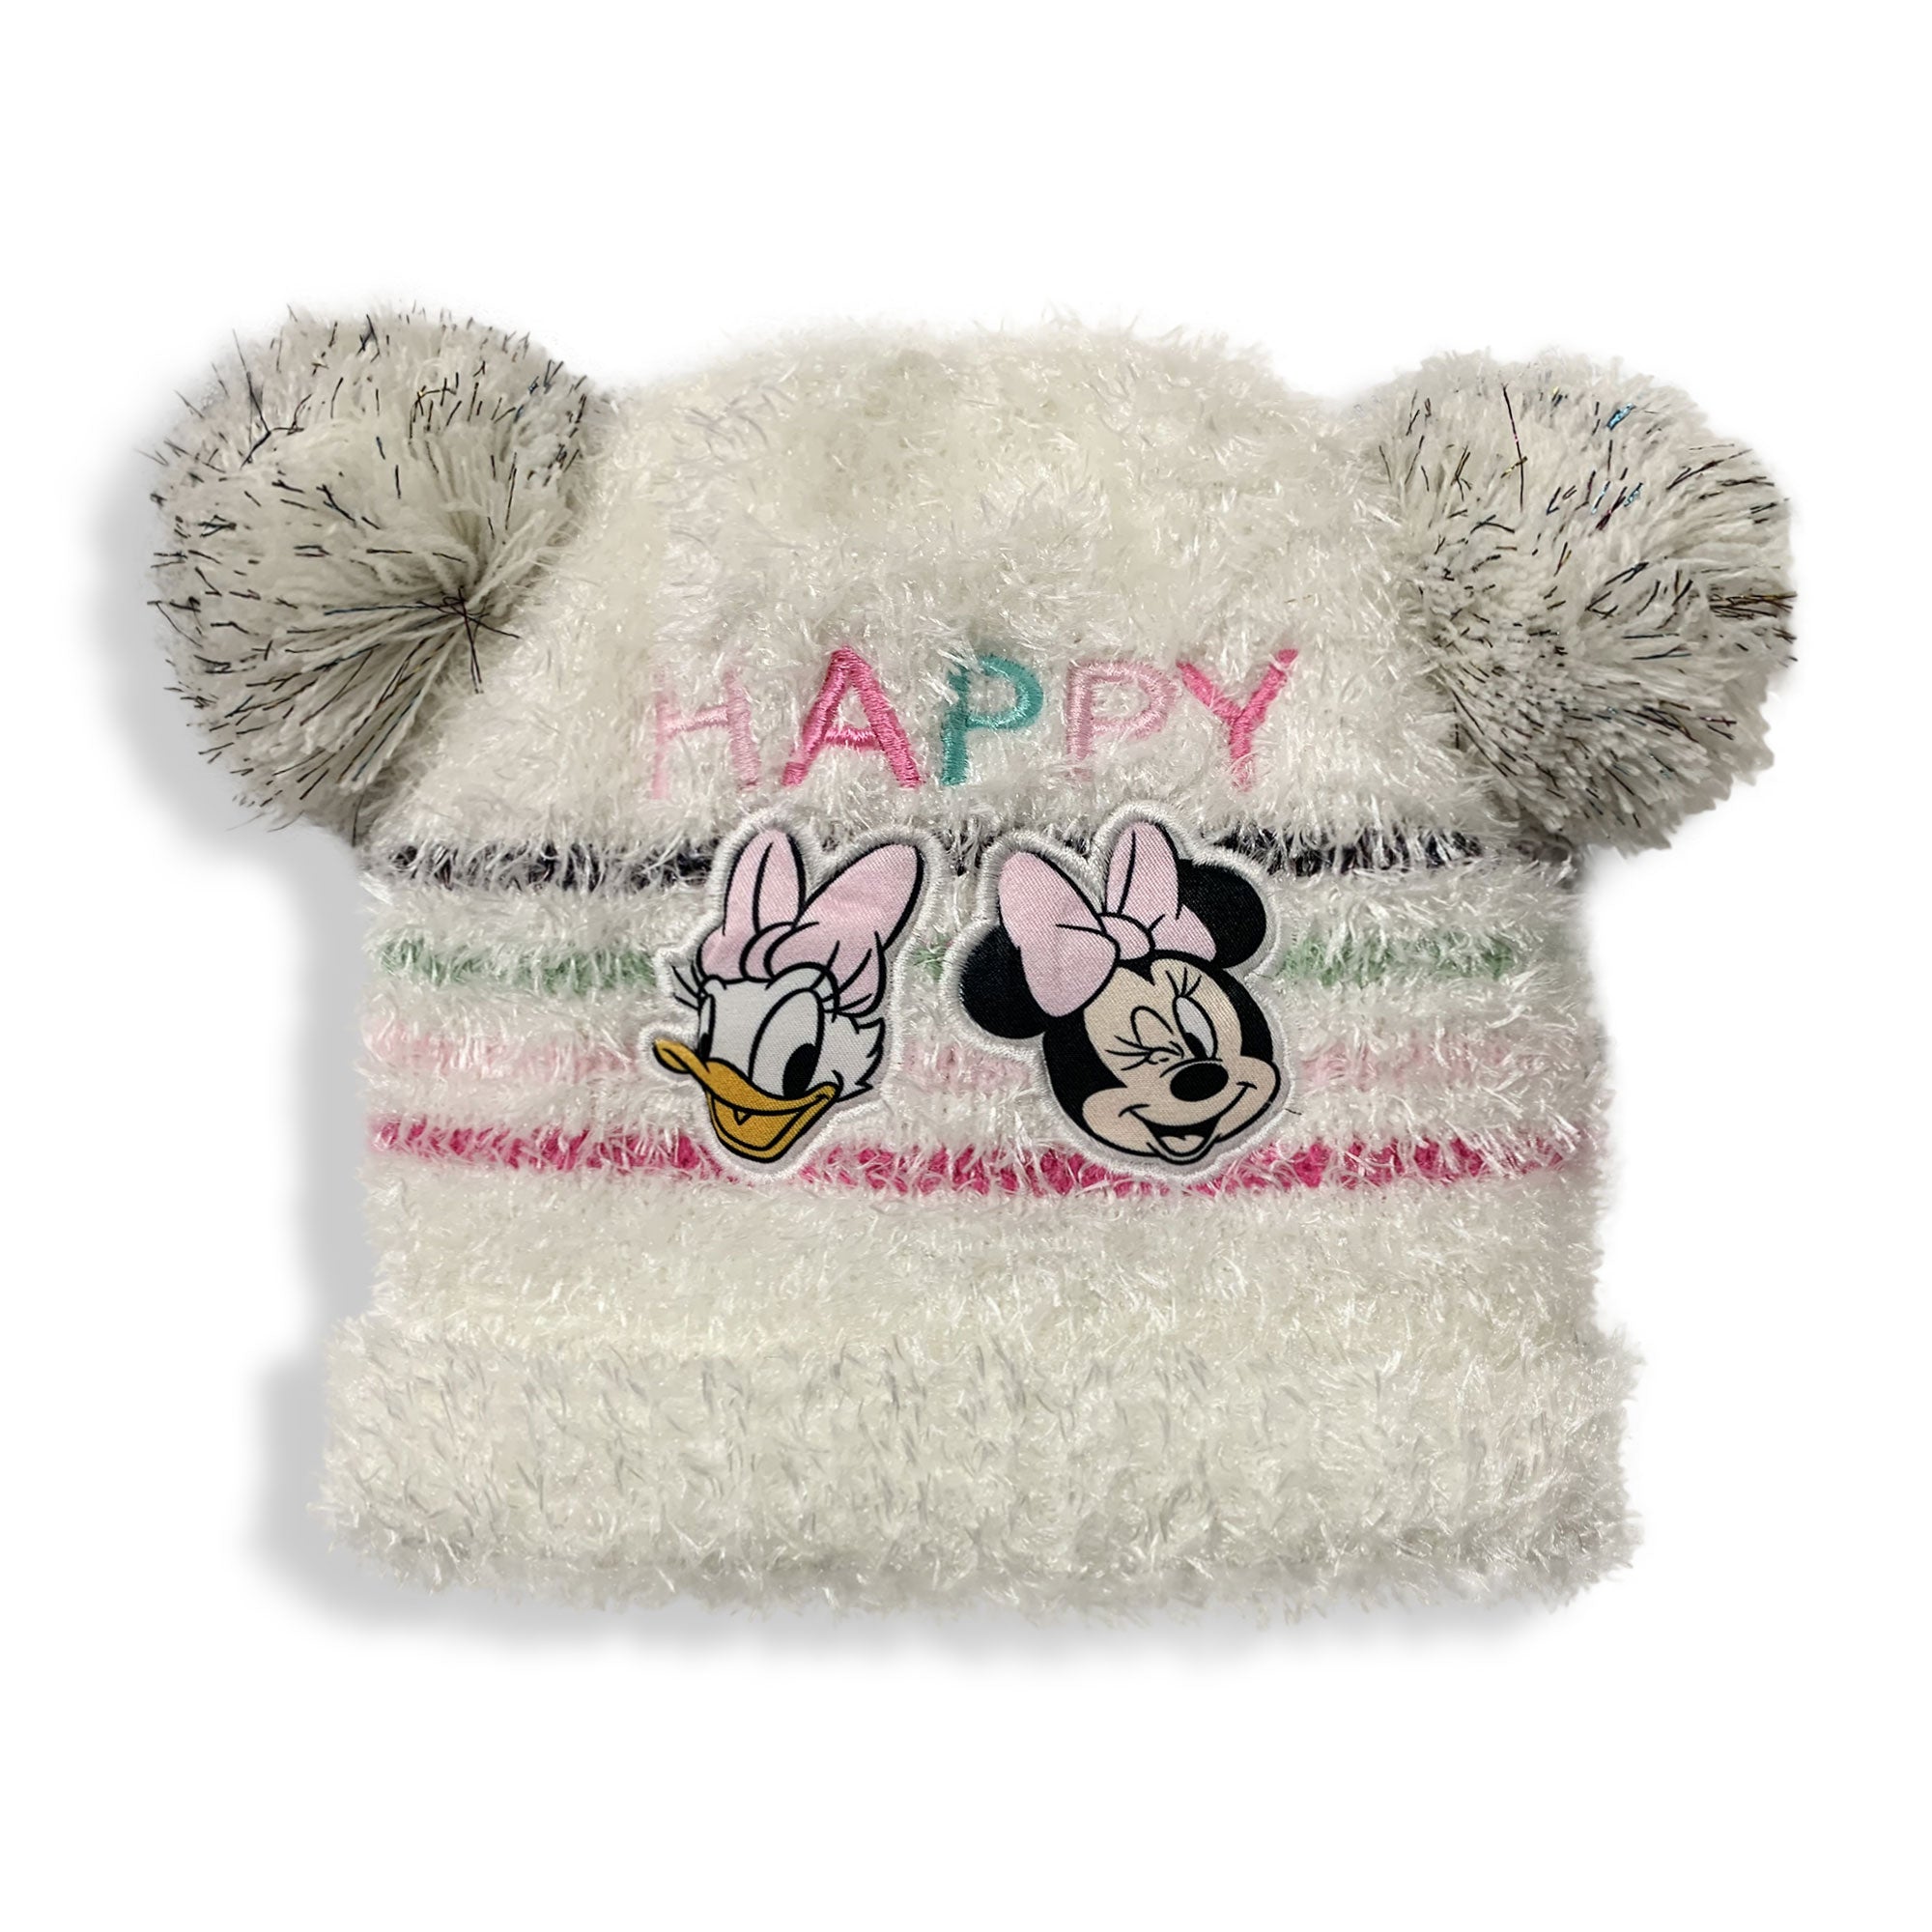 Cappello Disney Minnie Mouse invernale cappellino neonato bimba pon pon 5903